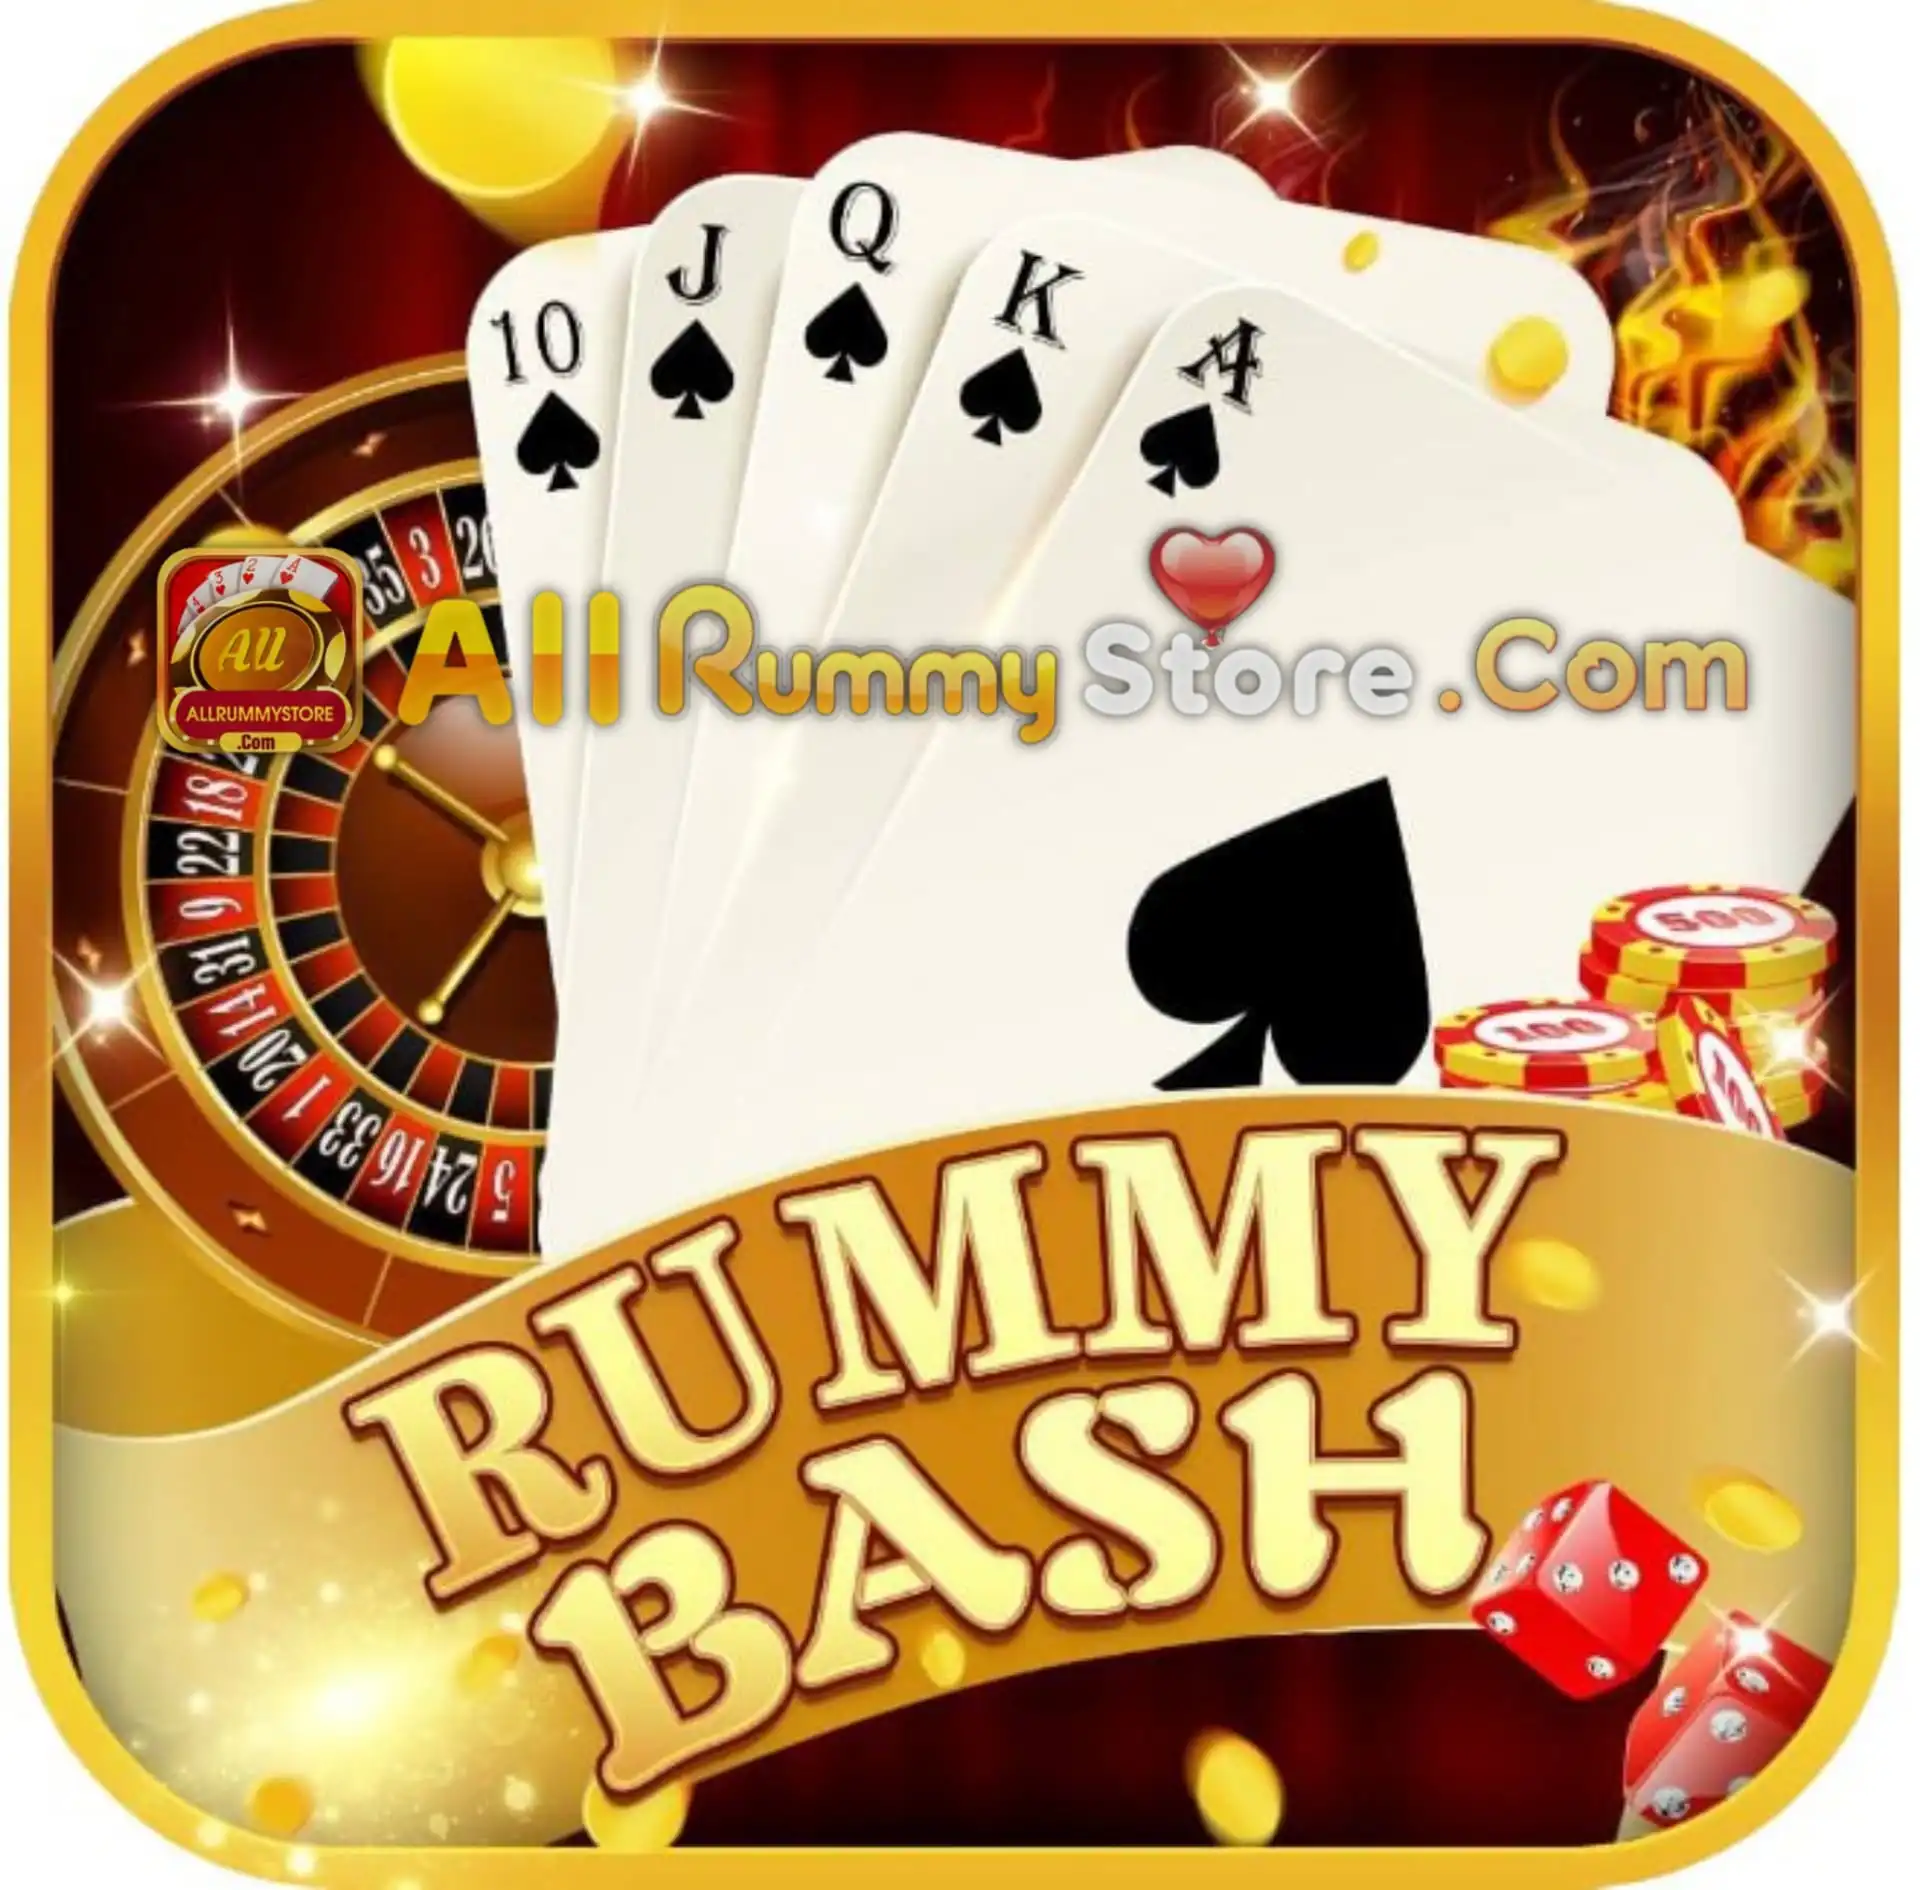 Rummy Bash - All Rummy App - All Rummy Apps - RummyBonusApp